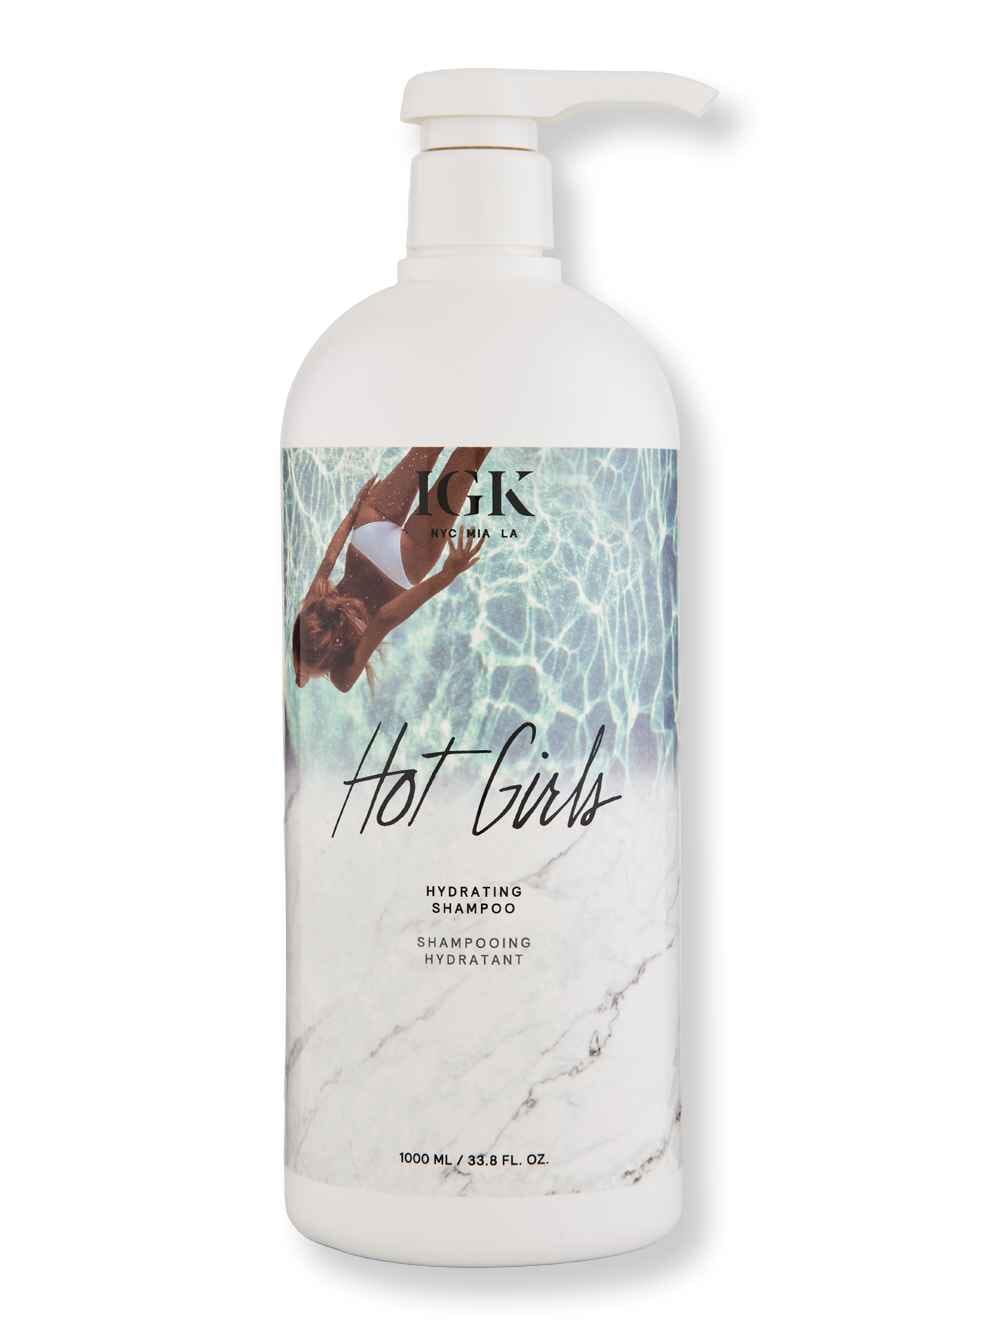 iGK iGK Hot Girls Hydrating Shampoo 33 oz1 Liter Shampoos 